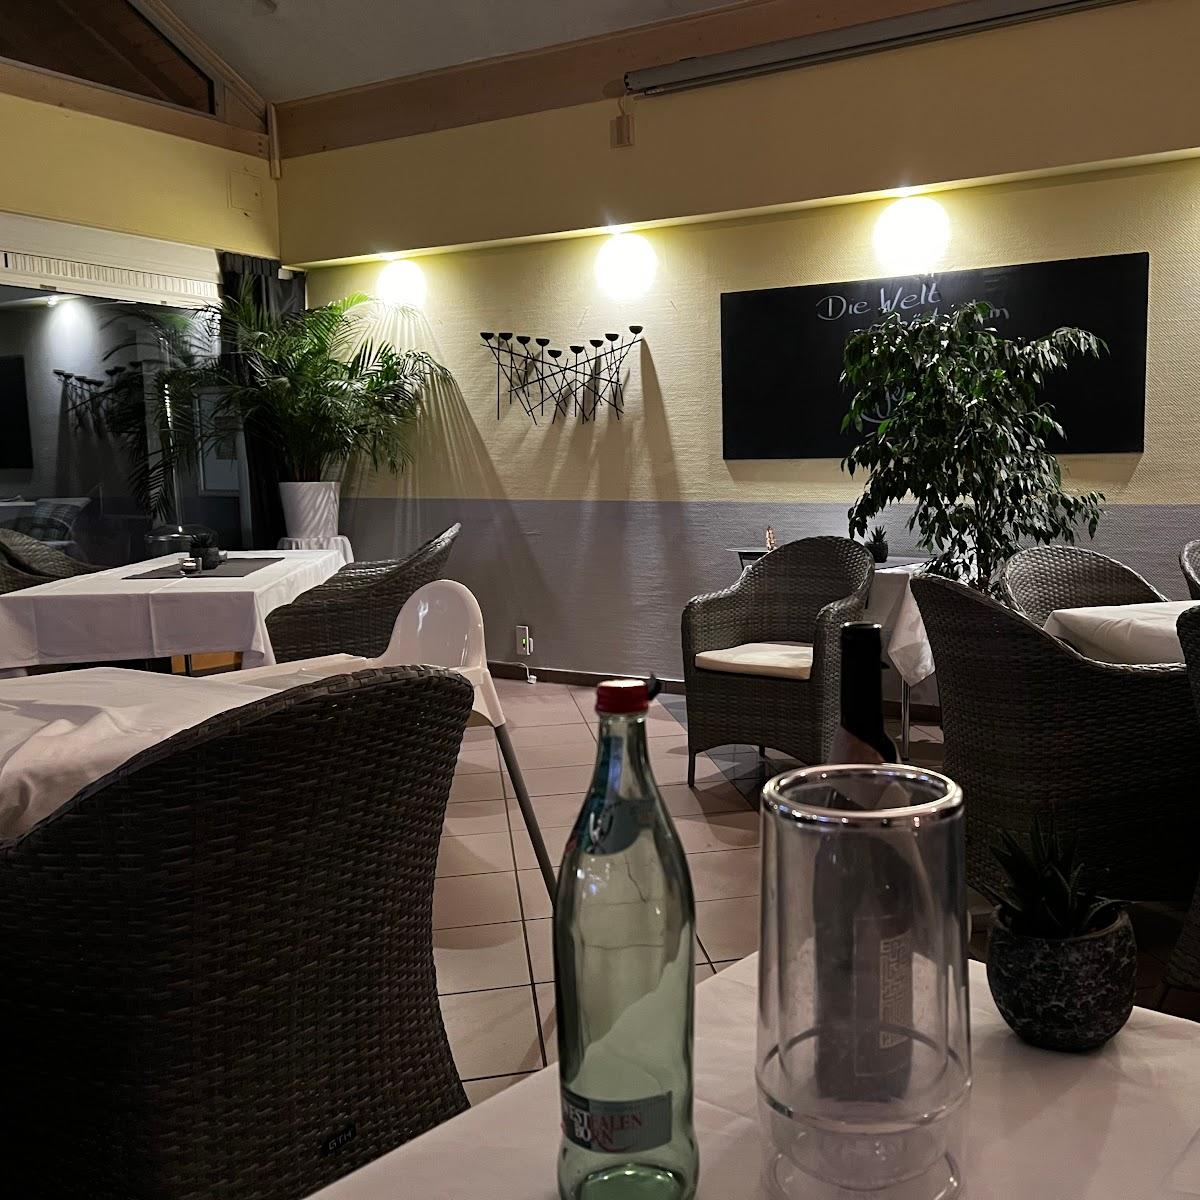 Restaurant "Clubhaus" in Kamen